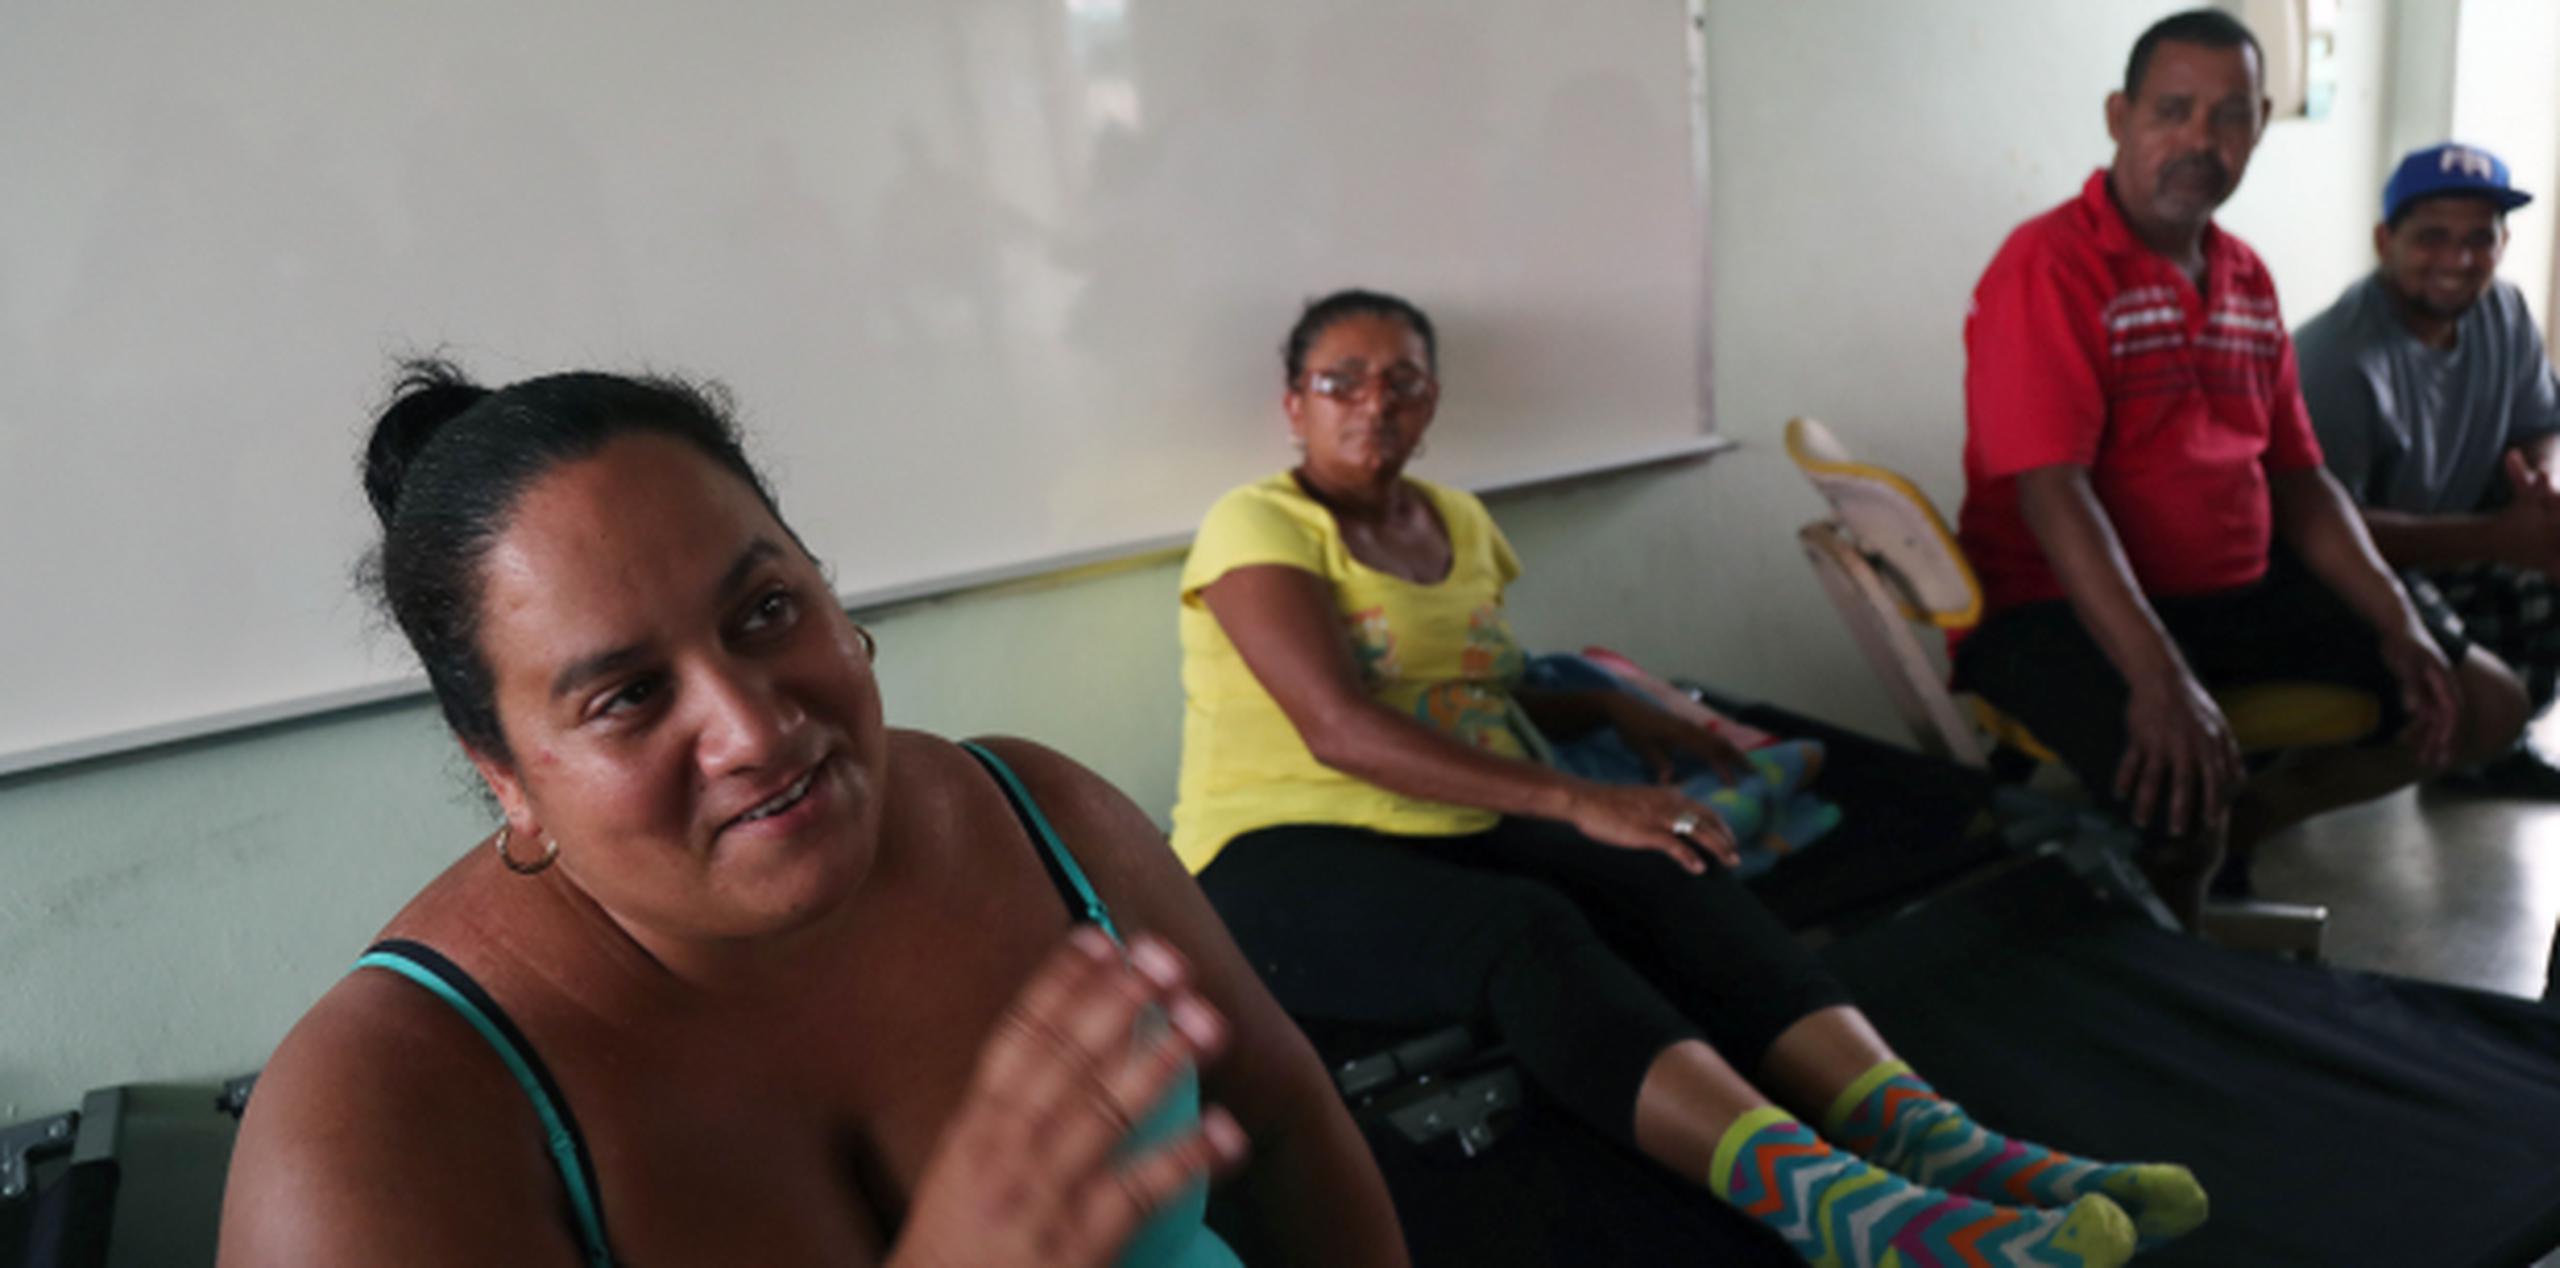 María Sánchez y su familia se refugiaron luego que pasara el huracán, el jueves en la tarde, porque se le inundaron sus hogares. (david.villafane@gfrmedia.com)